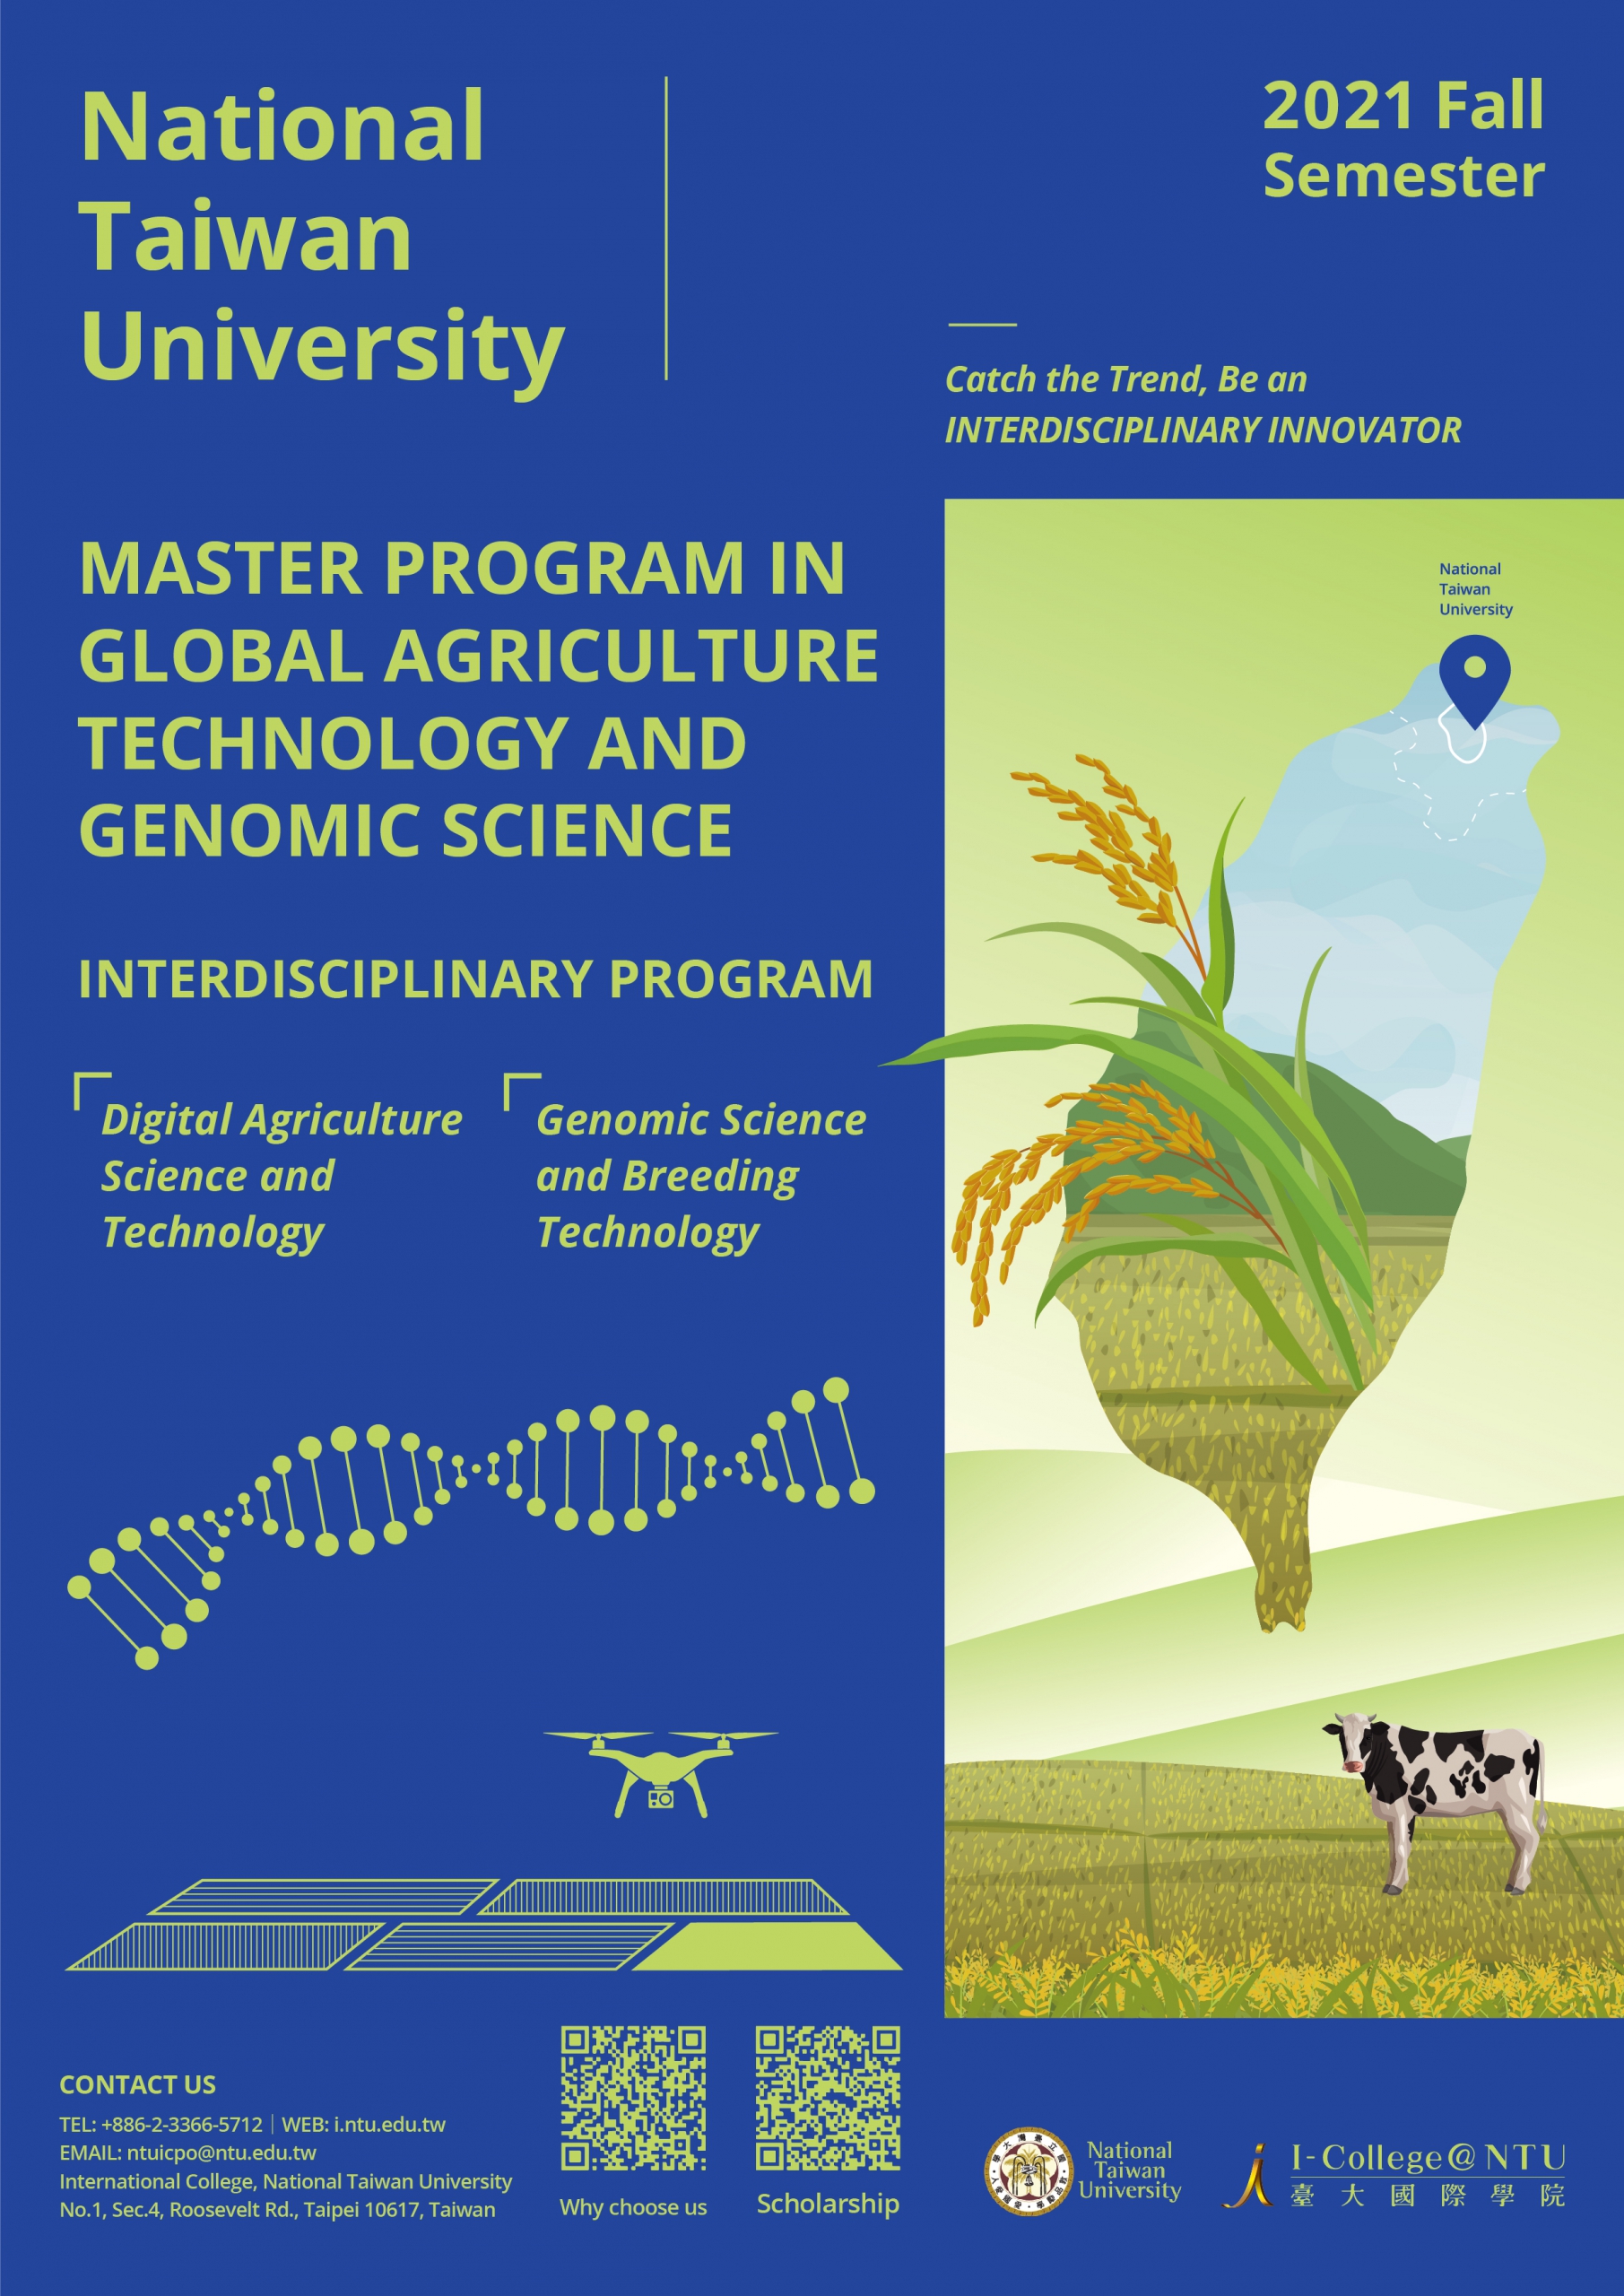 [7.8.2563] ประชาสัมพันธ์ Master Program in Global Agriculture Technology and Genomic Science (Global ATGS) ของมหาวิทยาลัย National Taiwan University